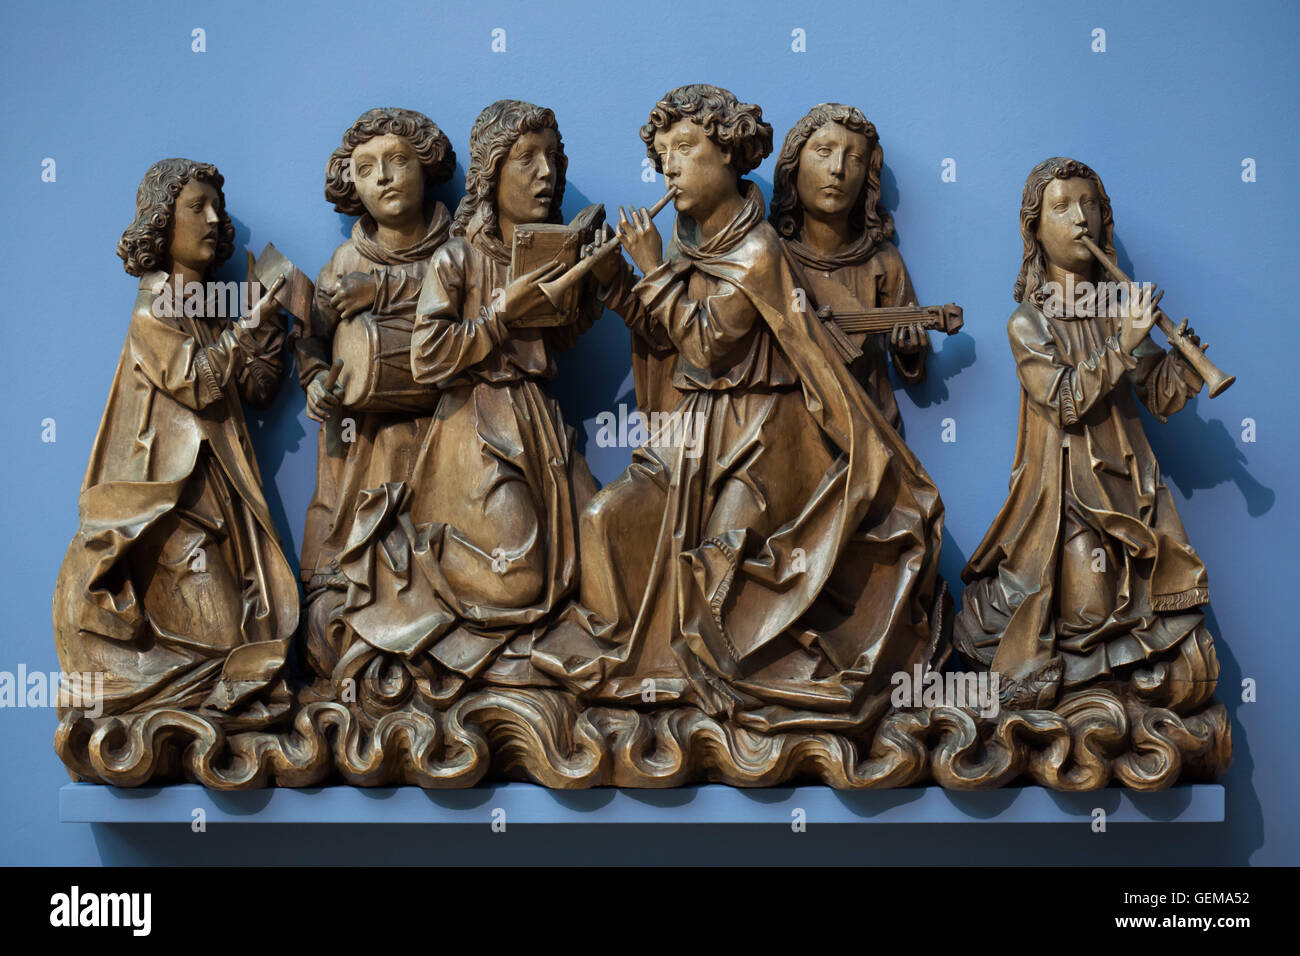 Les anges chantant et jouant des instruments de musique. Statue en bois de la DPA. 1505 par le sculpteur allemand Tilman Riemenschneider et son atelier affiché dans le Musée Bode de Berlin, Allemagne. Banque D'Images